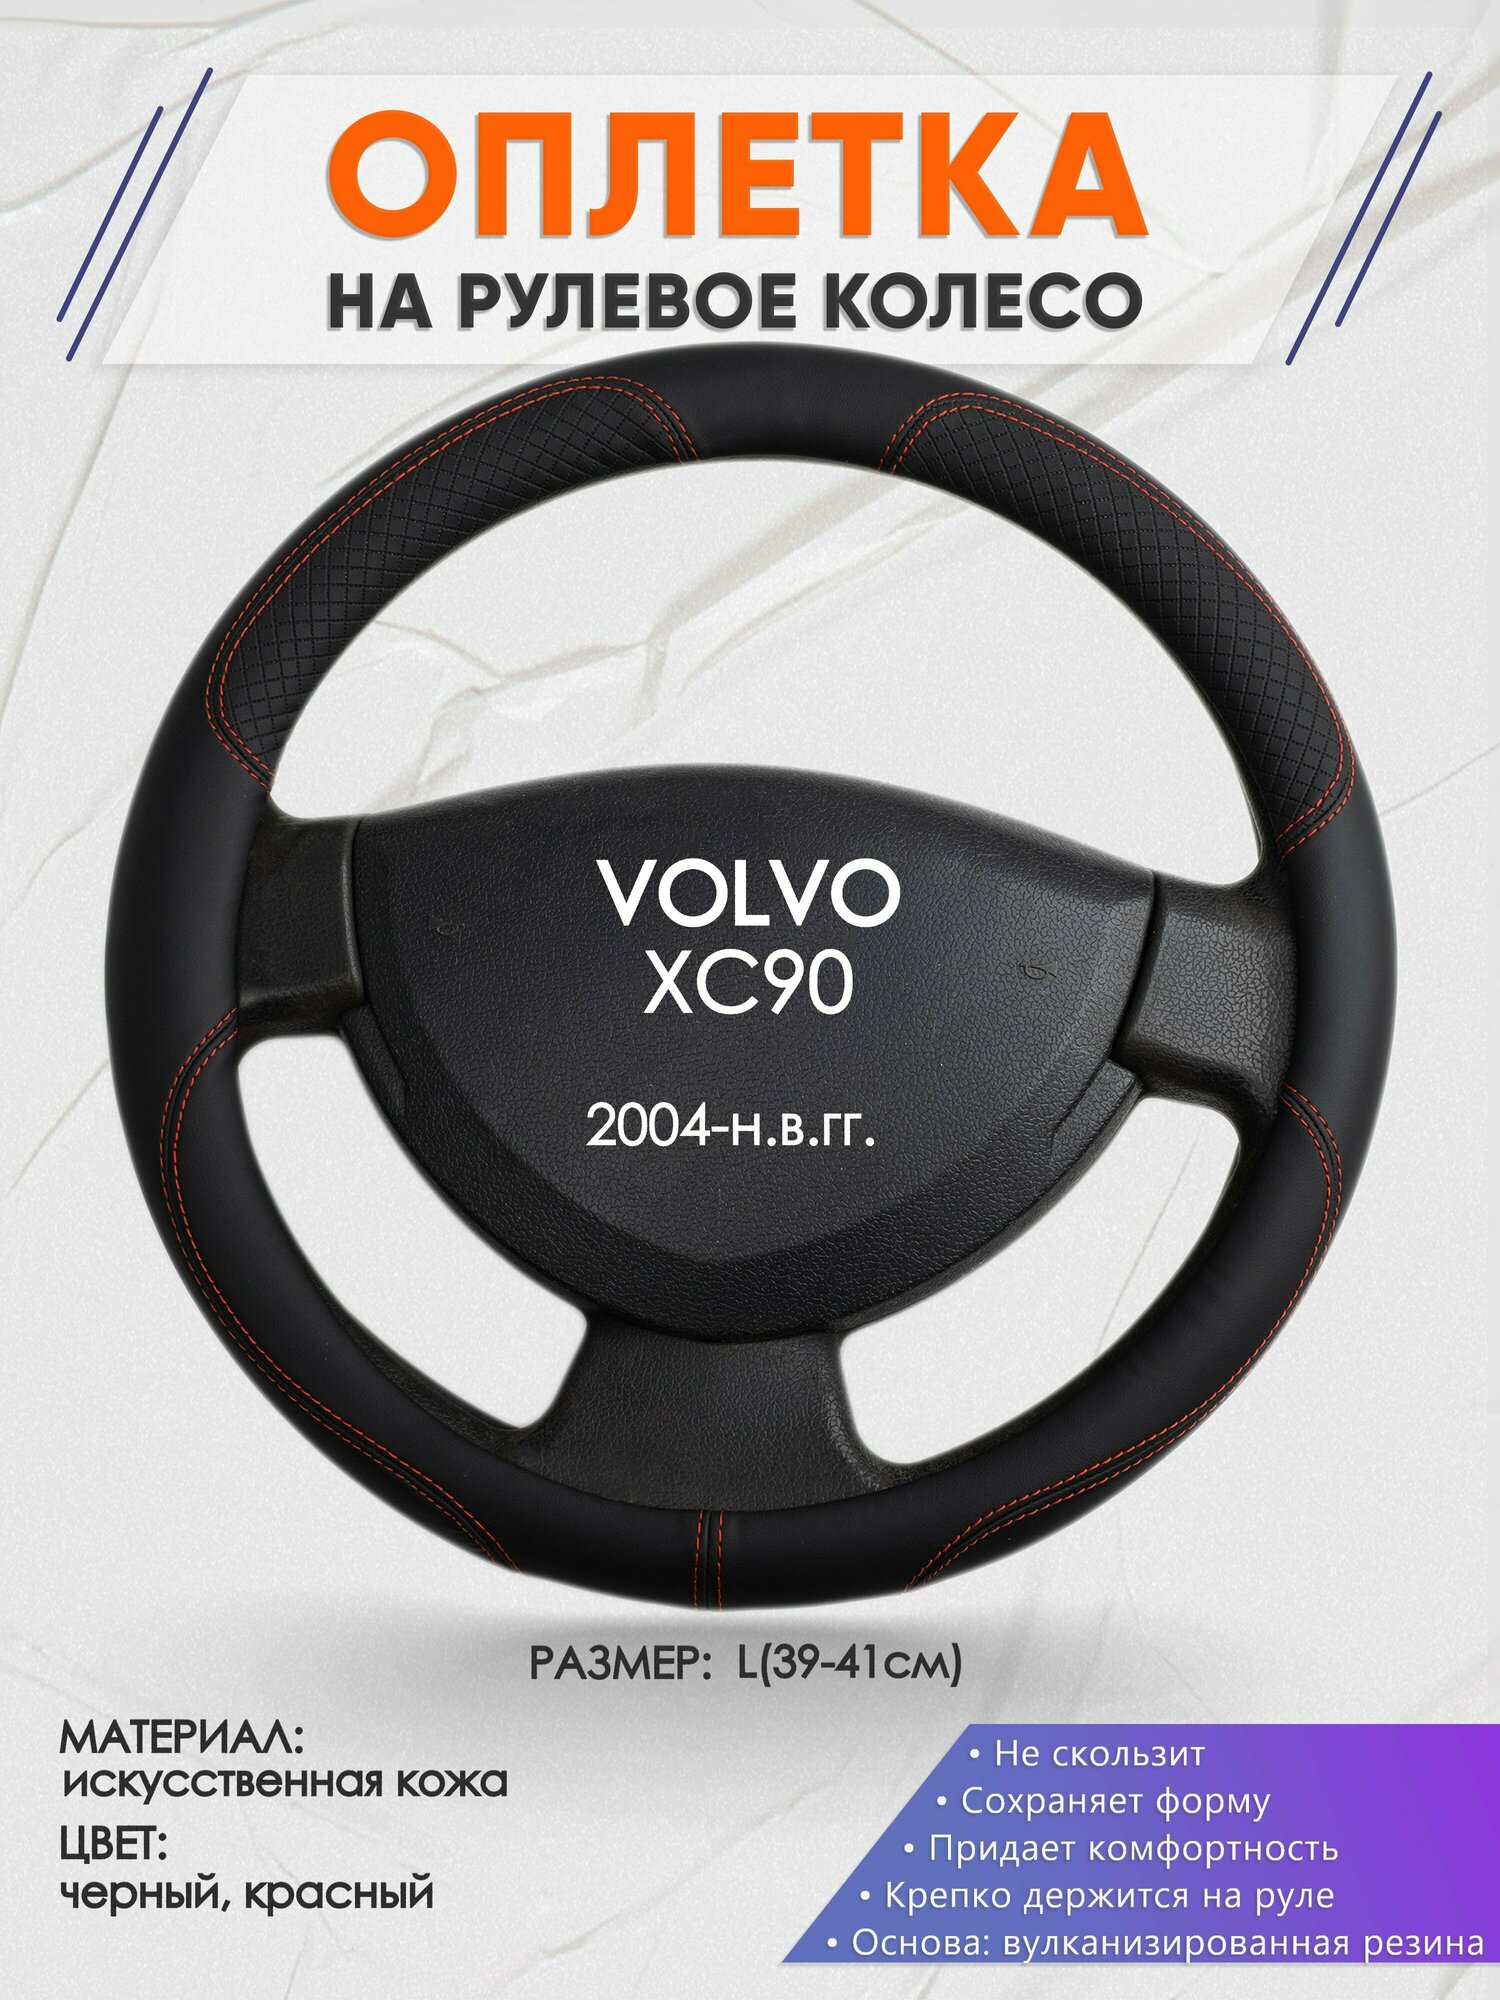 Оплетка на руль для VOLVO XC90(Вольво иксс90) 2004-н.в., L(39-41см), Искусственная кожа 61